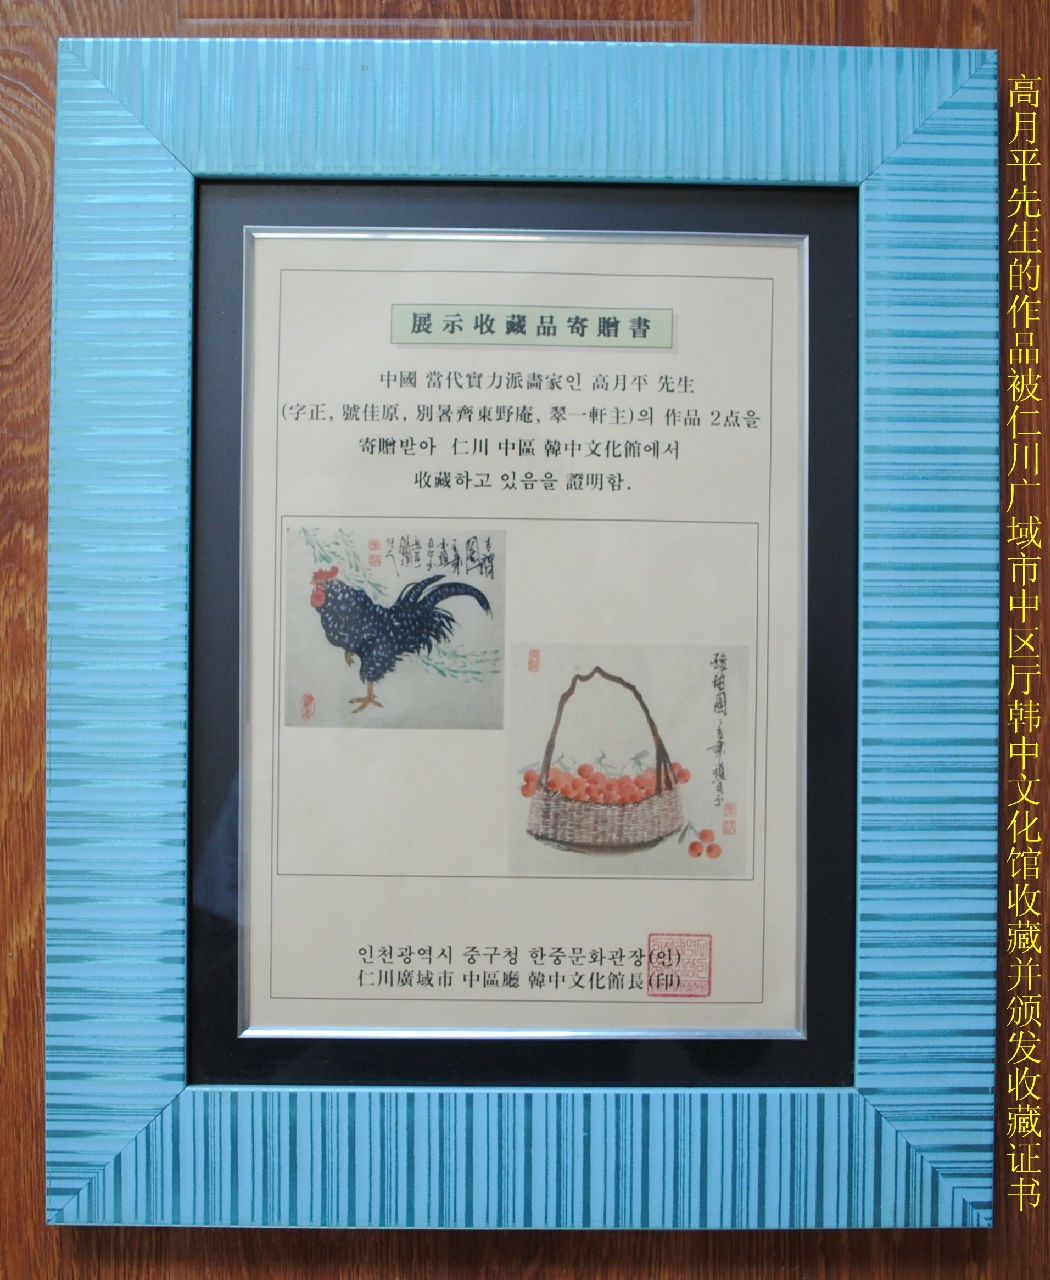 韓國文化廳頒發的高月平先生書畫收藏證書